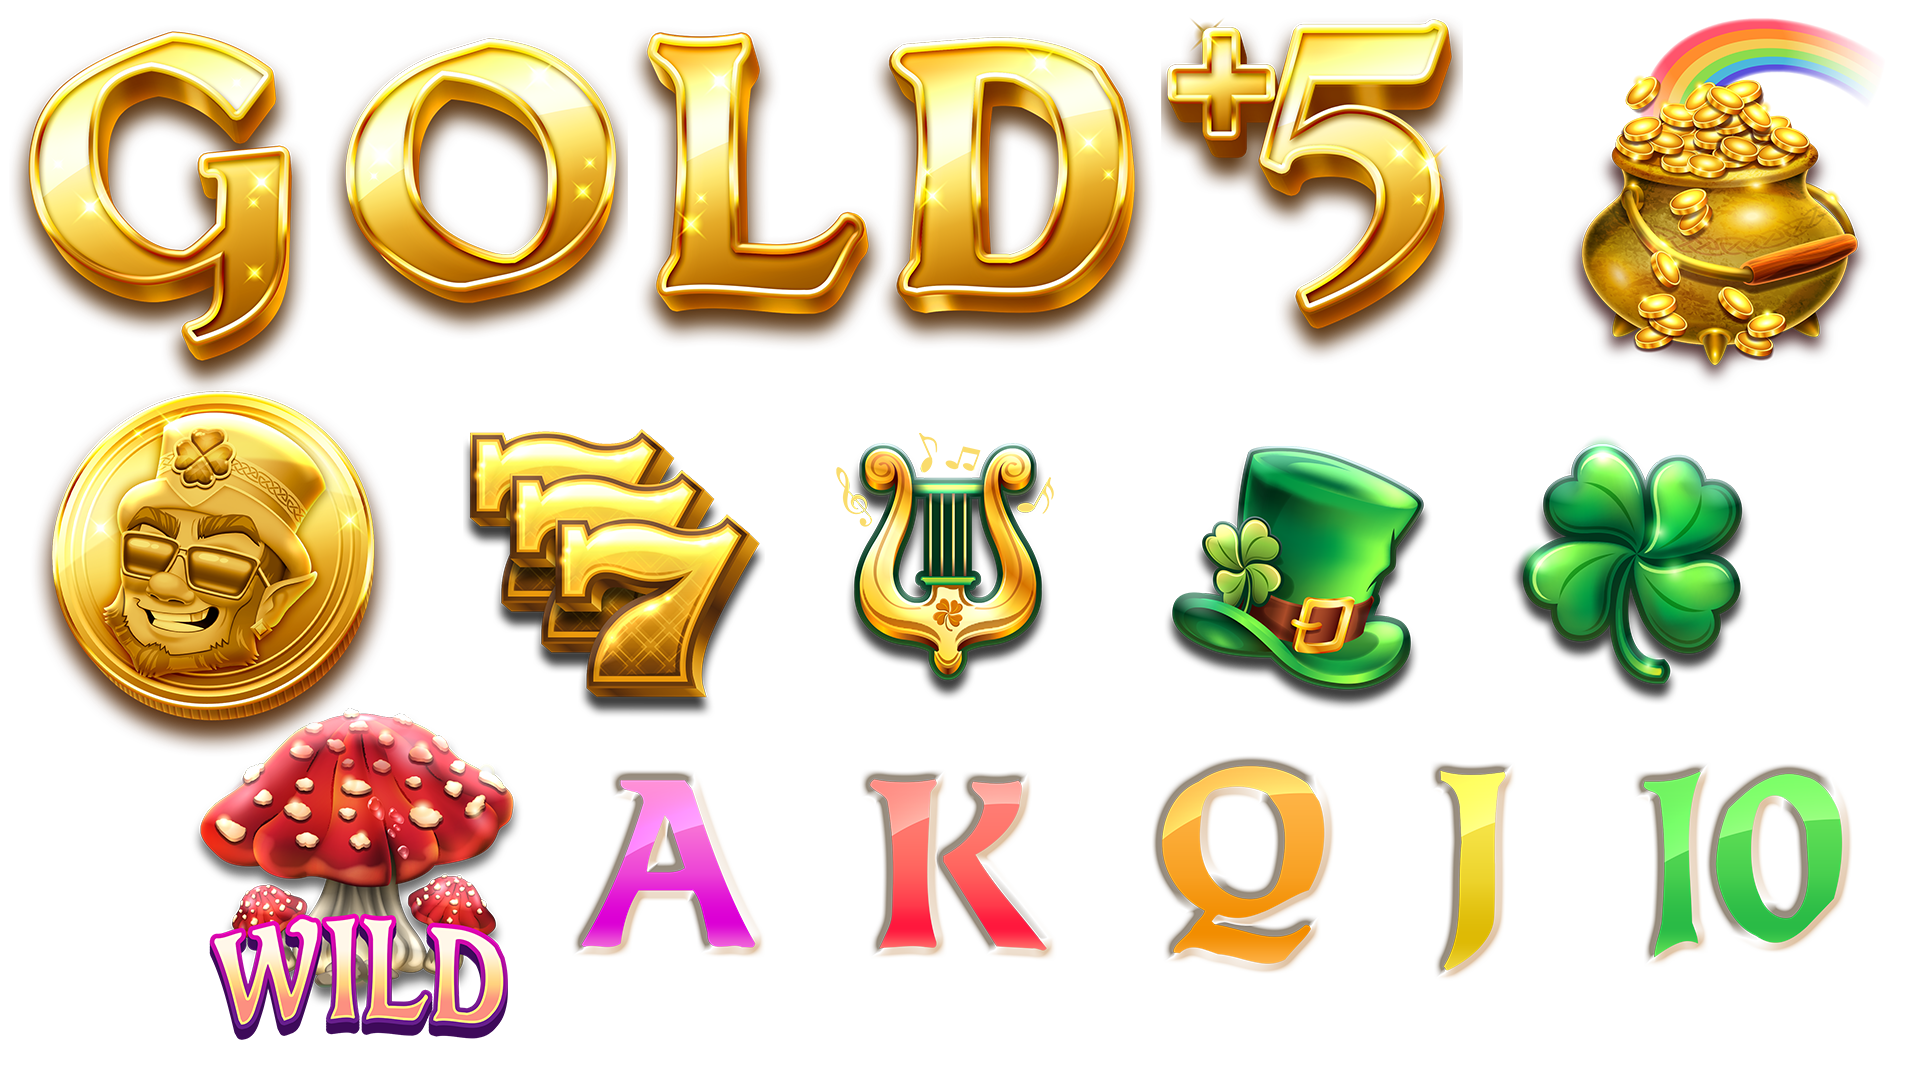 9 pots of gold megaways slot symbols